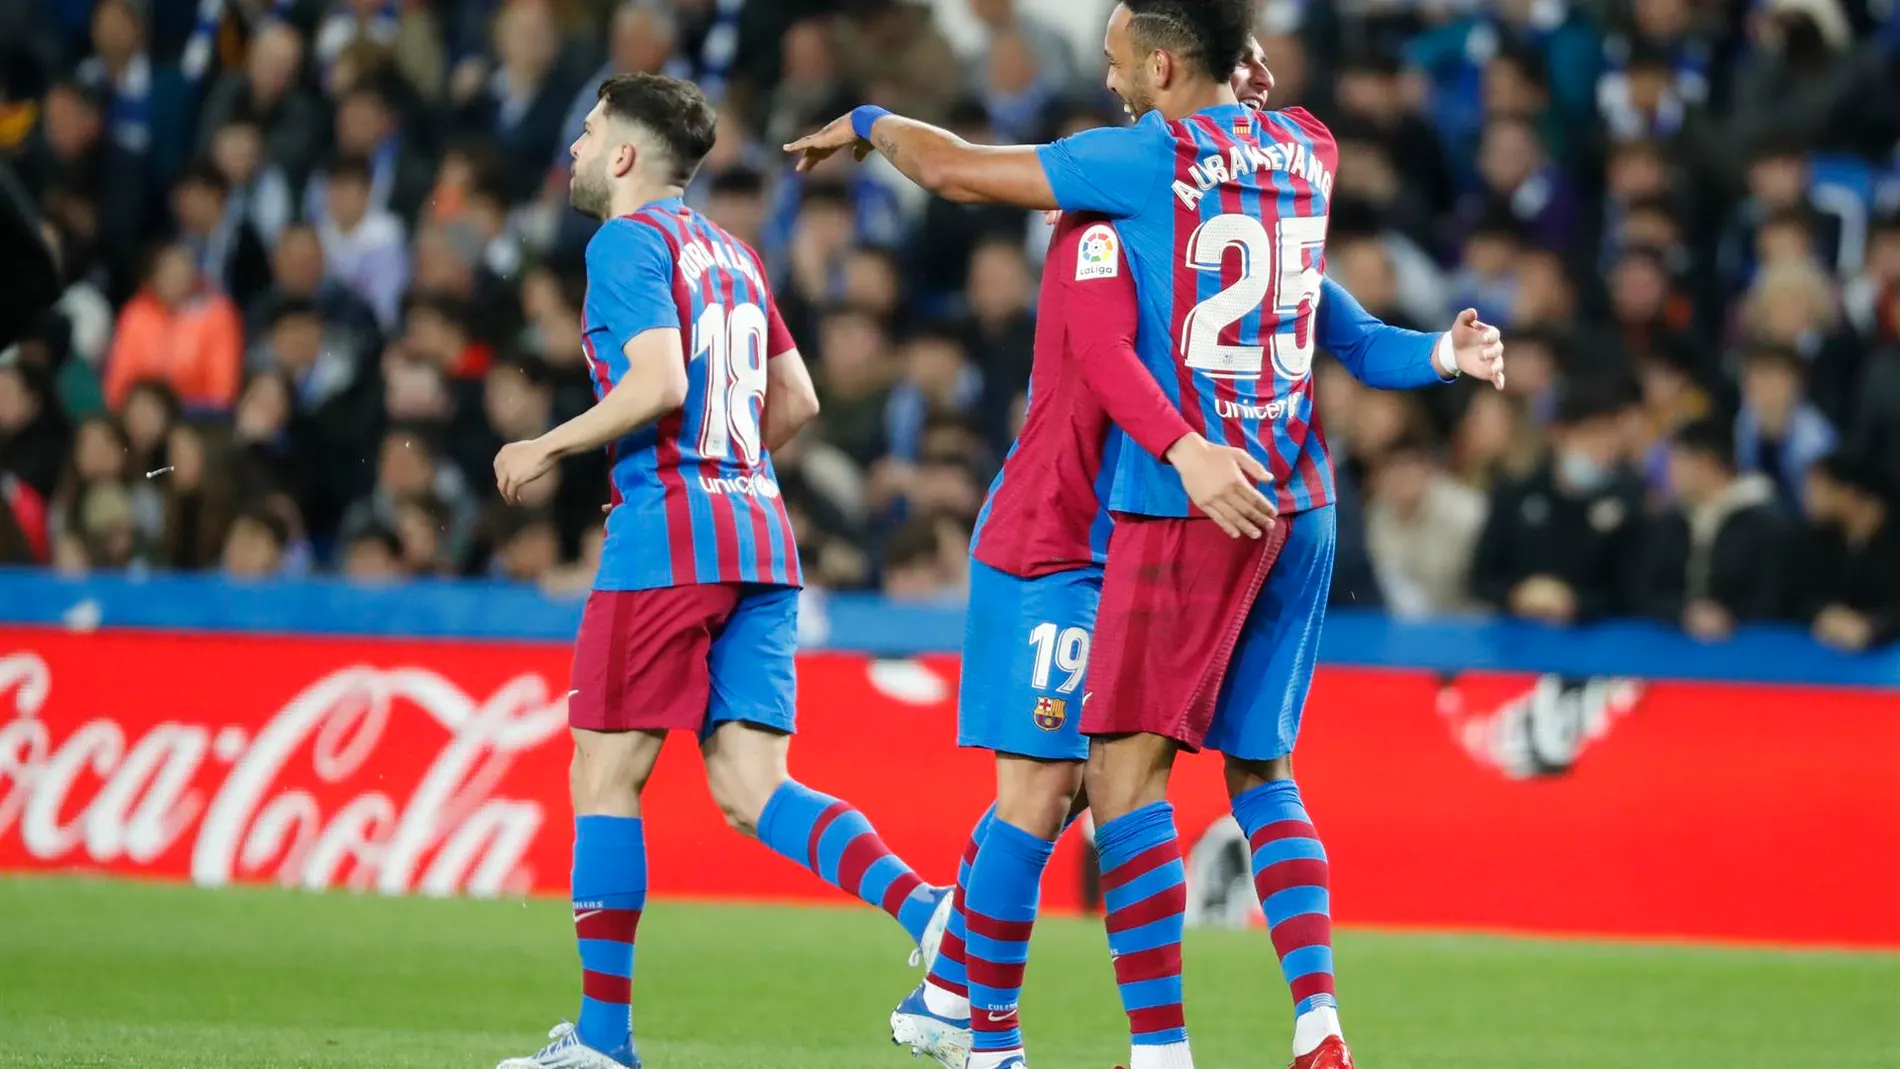 El F.C. Barcelona retrasa el alirón blanco tras una victoria sufrida ante una fuerte Real Sociedad